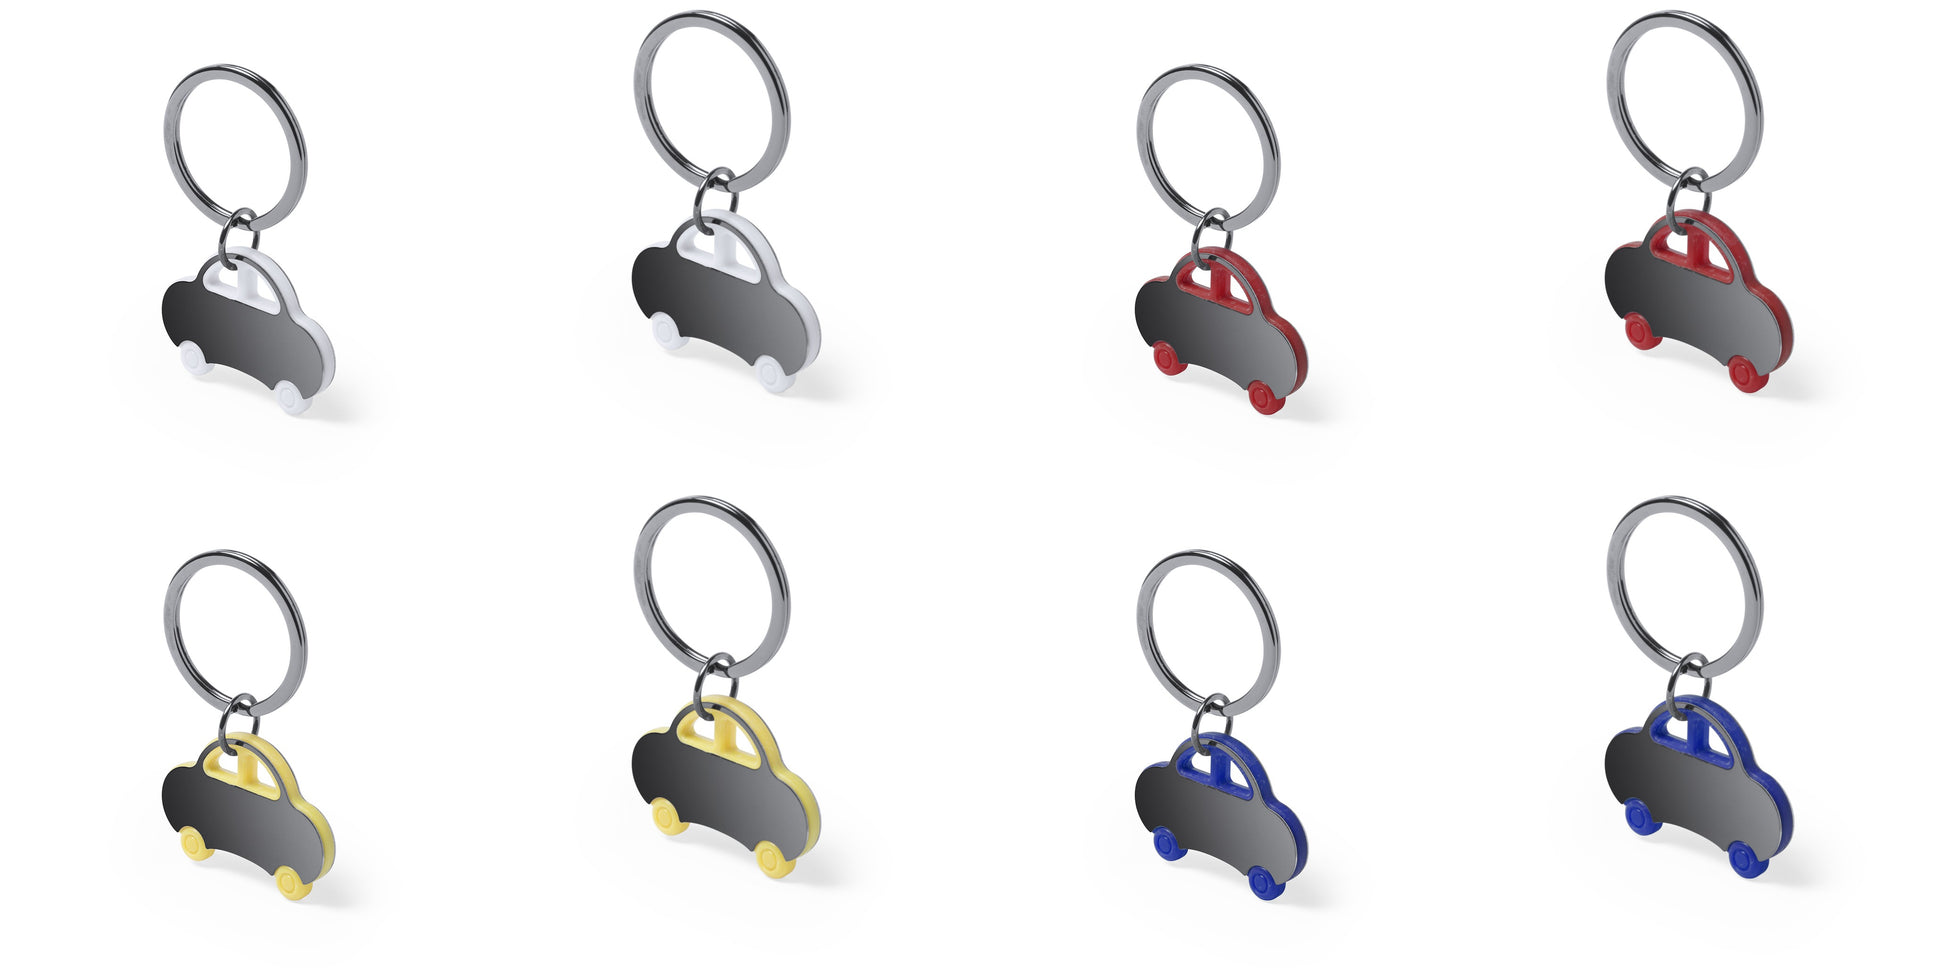 Porte-clés original bicolore avec forme de voiture, en acier inoxydable. Personnalisable - Touche de couleur.